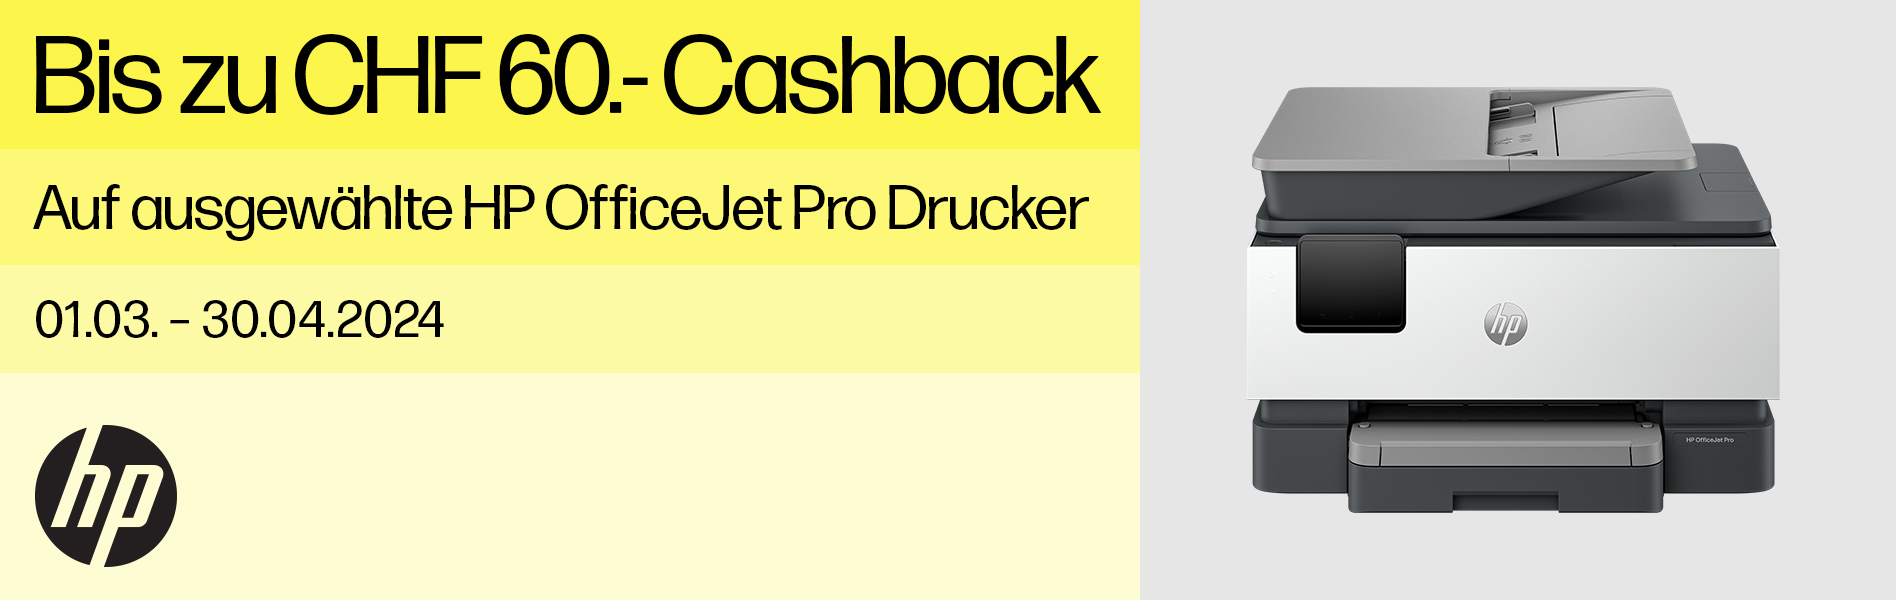 HP OfficeJet Pro Cashback